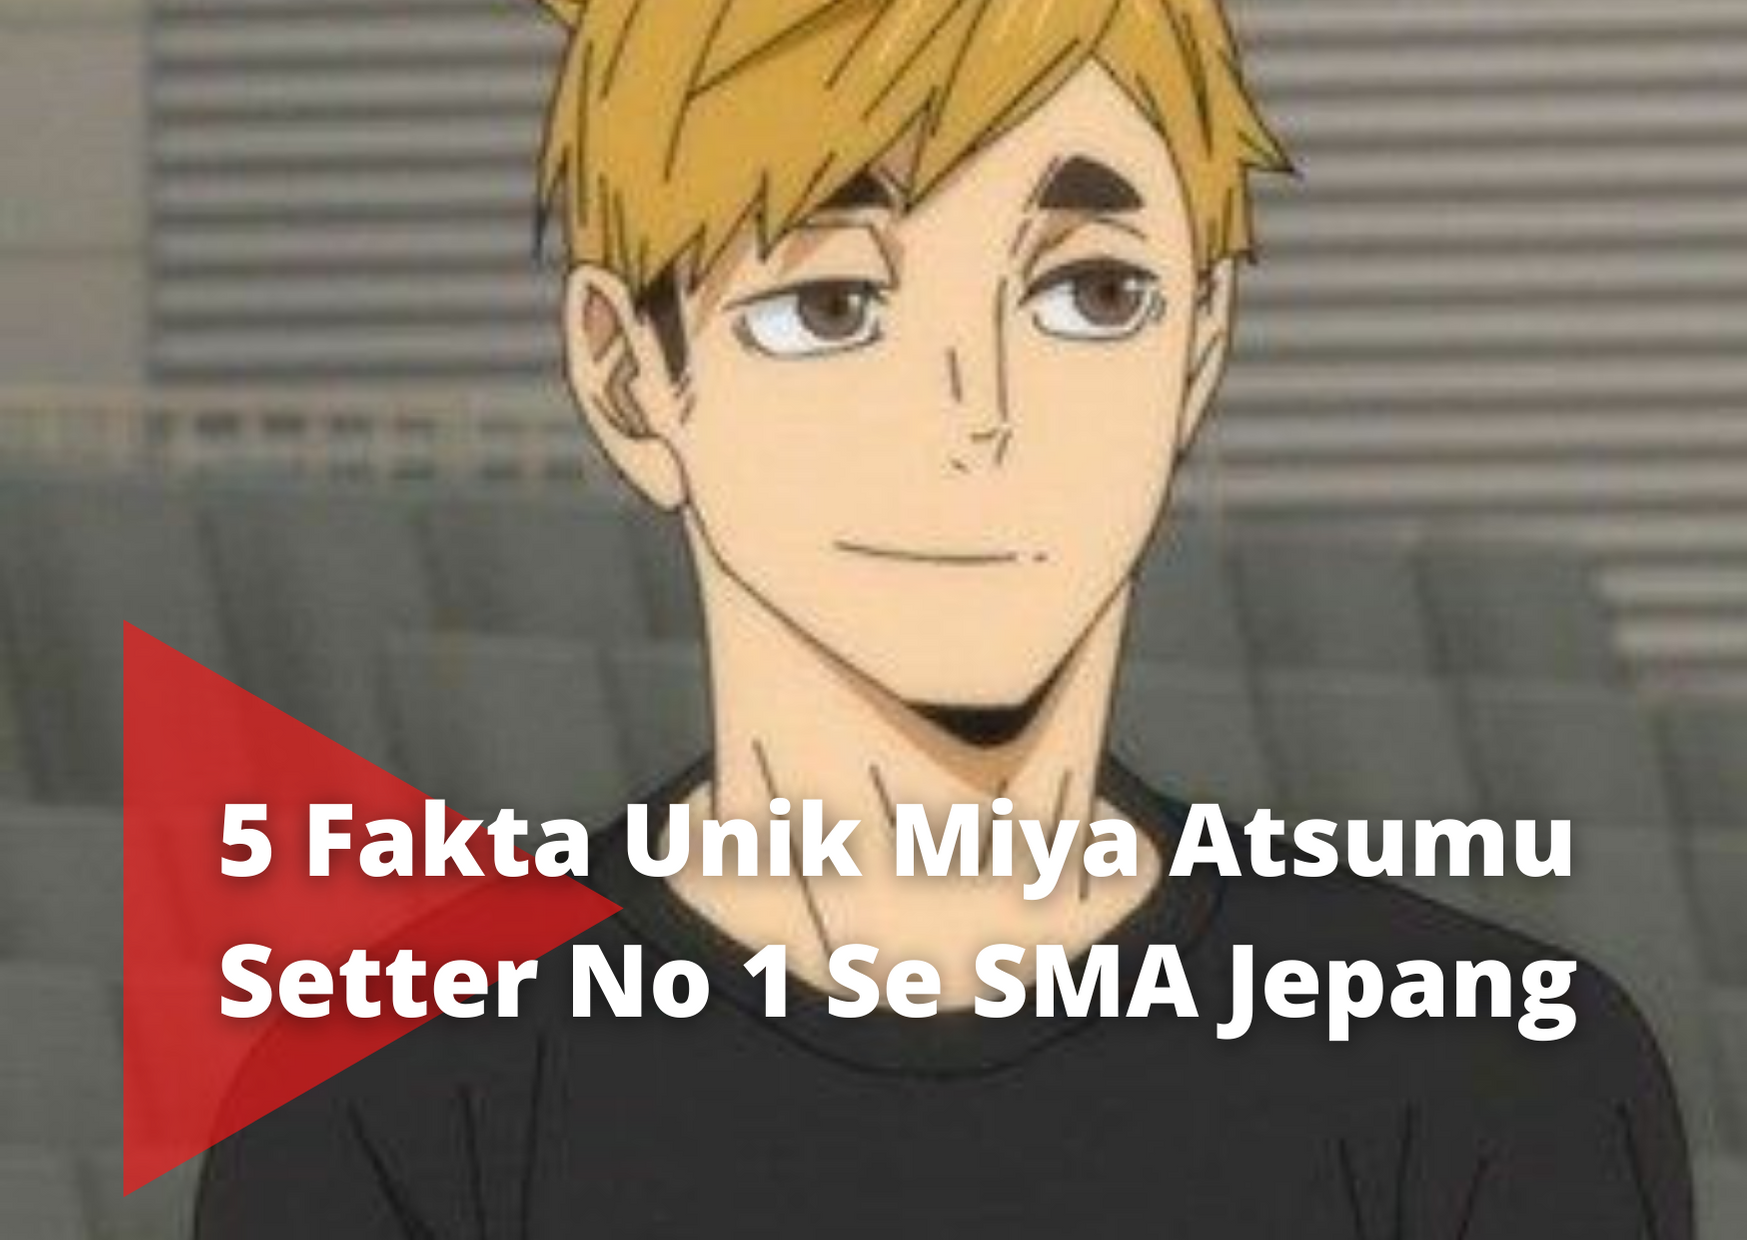 5 Fakta Unik Miya Atsumu Setter No 1 Se SMA Jepang Anime Haikyuu!